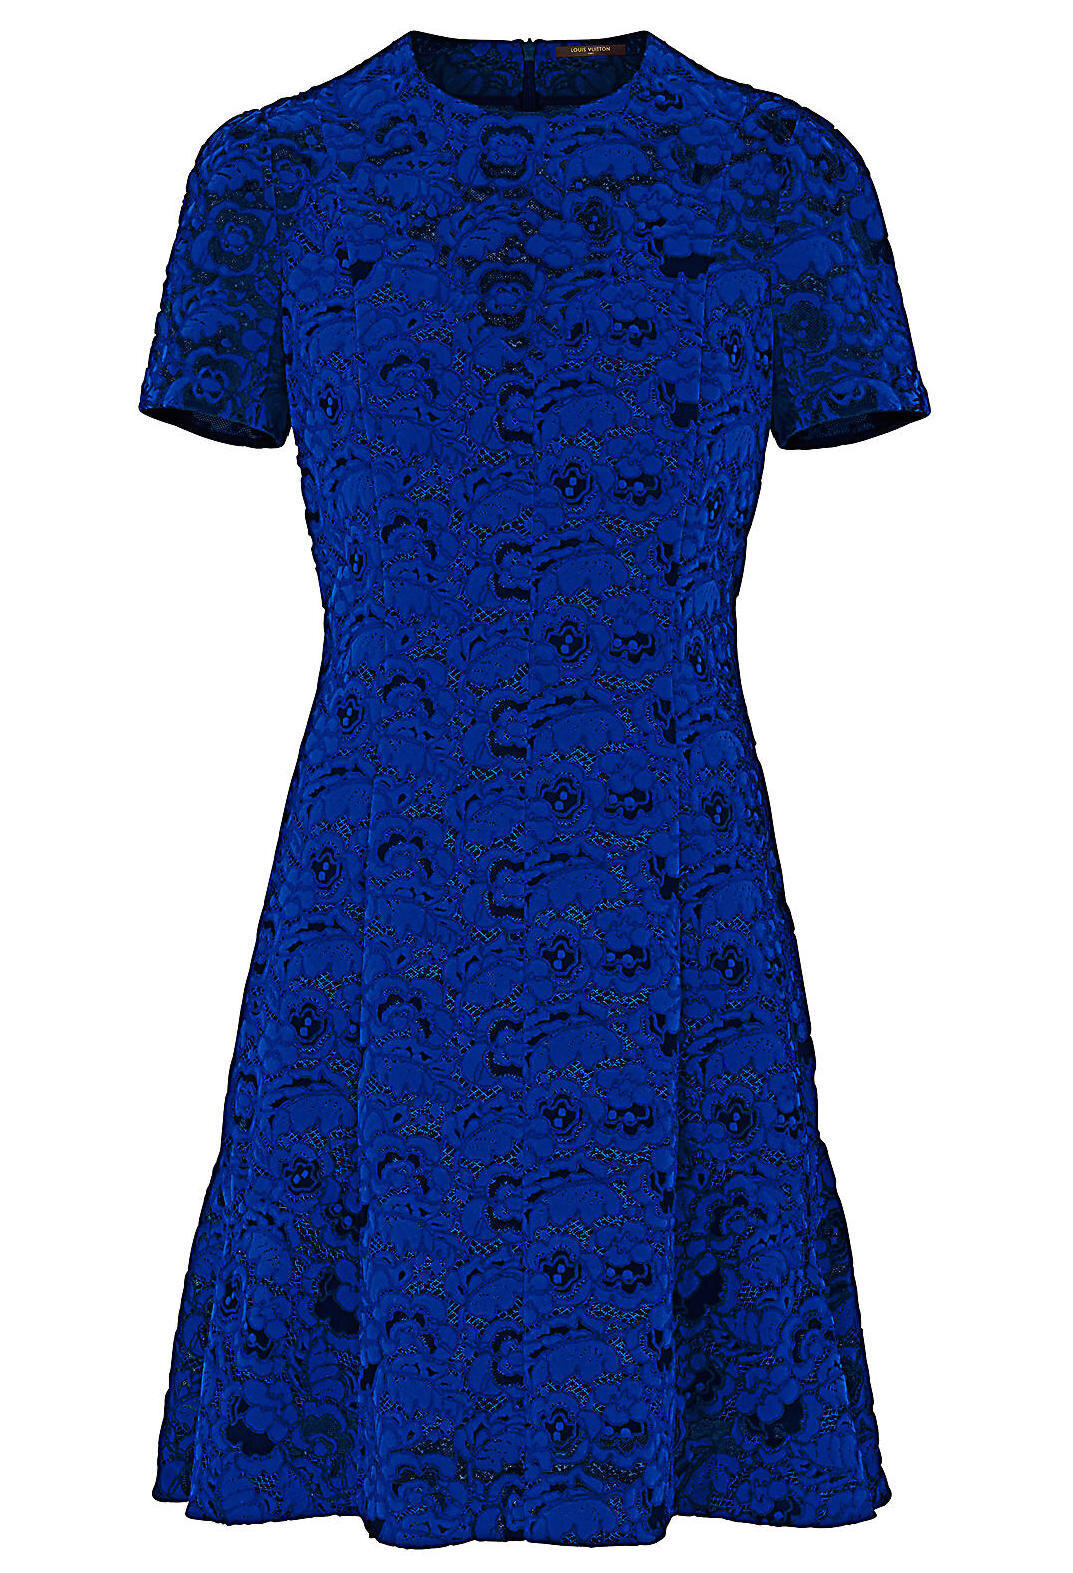 Louis Vuitton Velvet-Effect Lace Skater Dress in Cobalt Blue.jpg